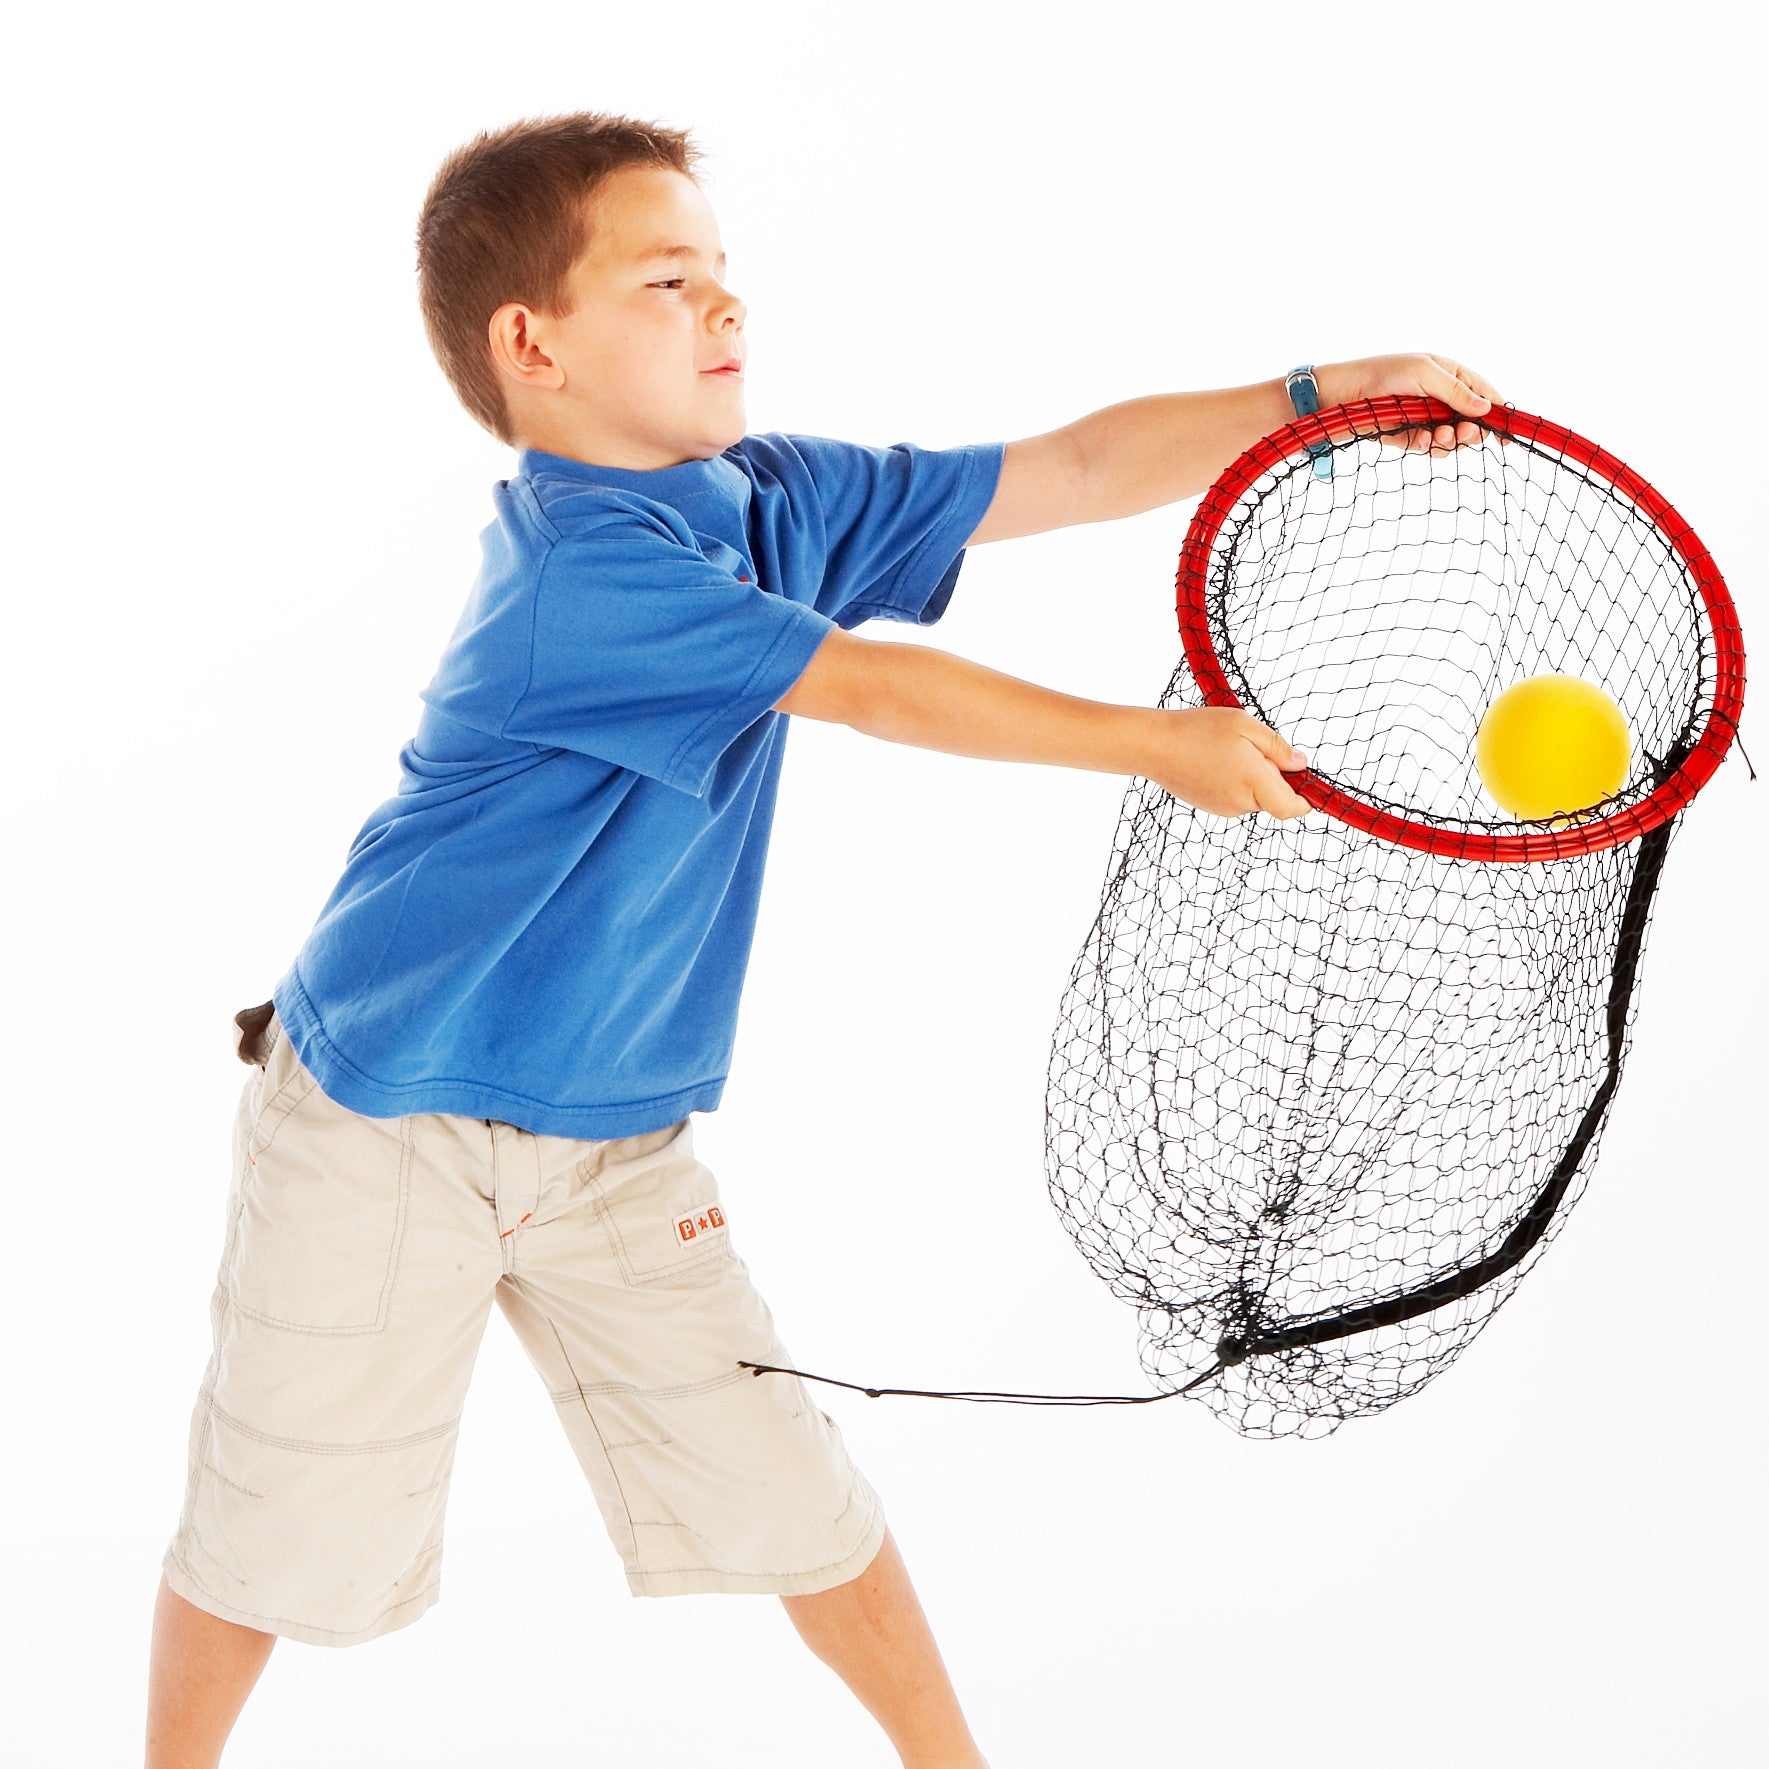 Owen catching a sponge ball in his 'fishing net', or Easy Catch Net.